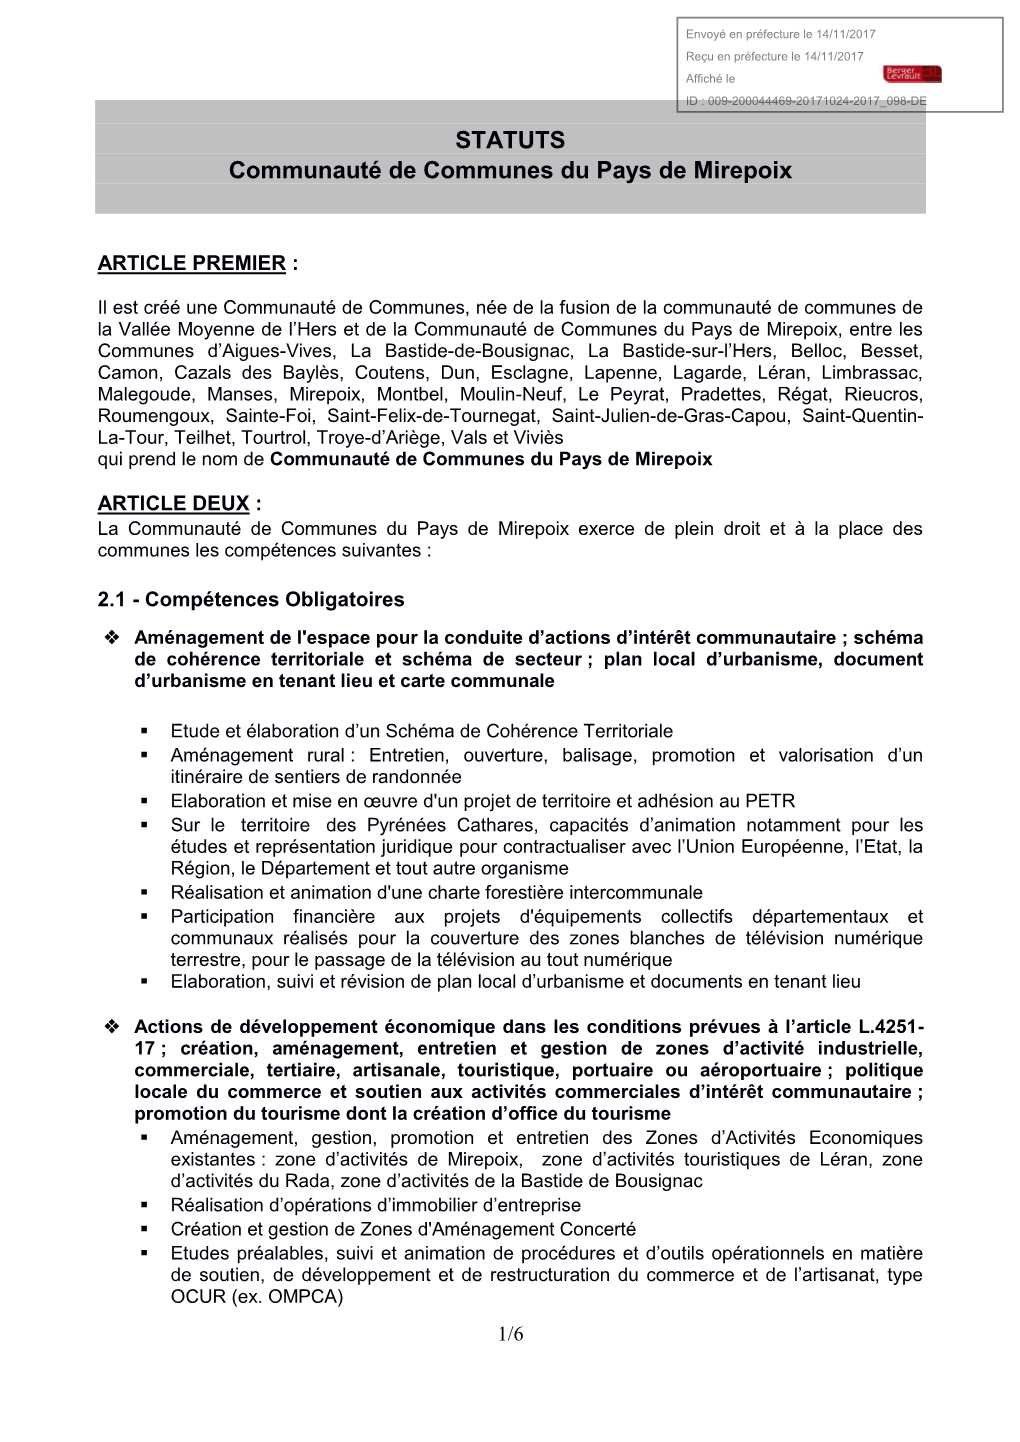 STATUTS Communauté De Communes Du Pays De Mirepoix